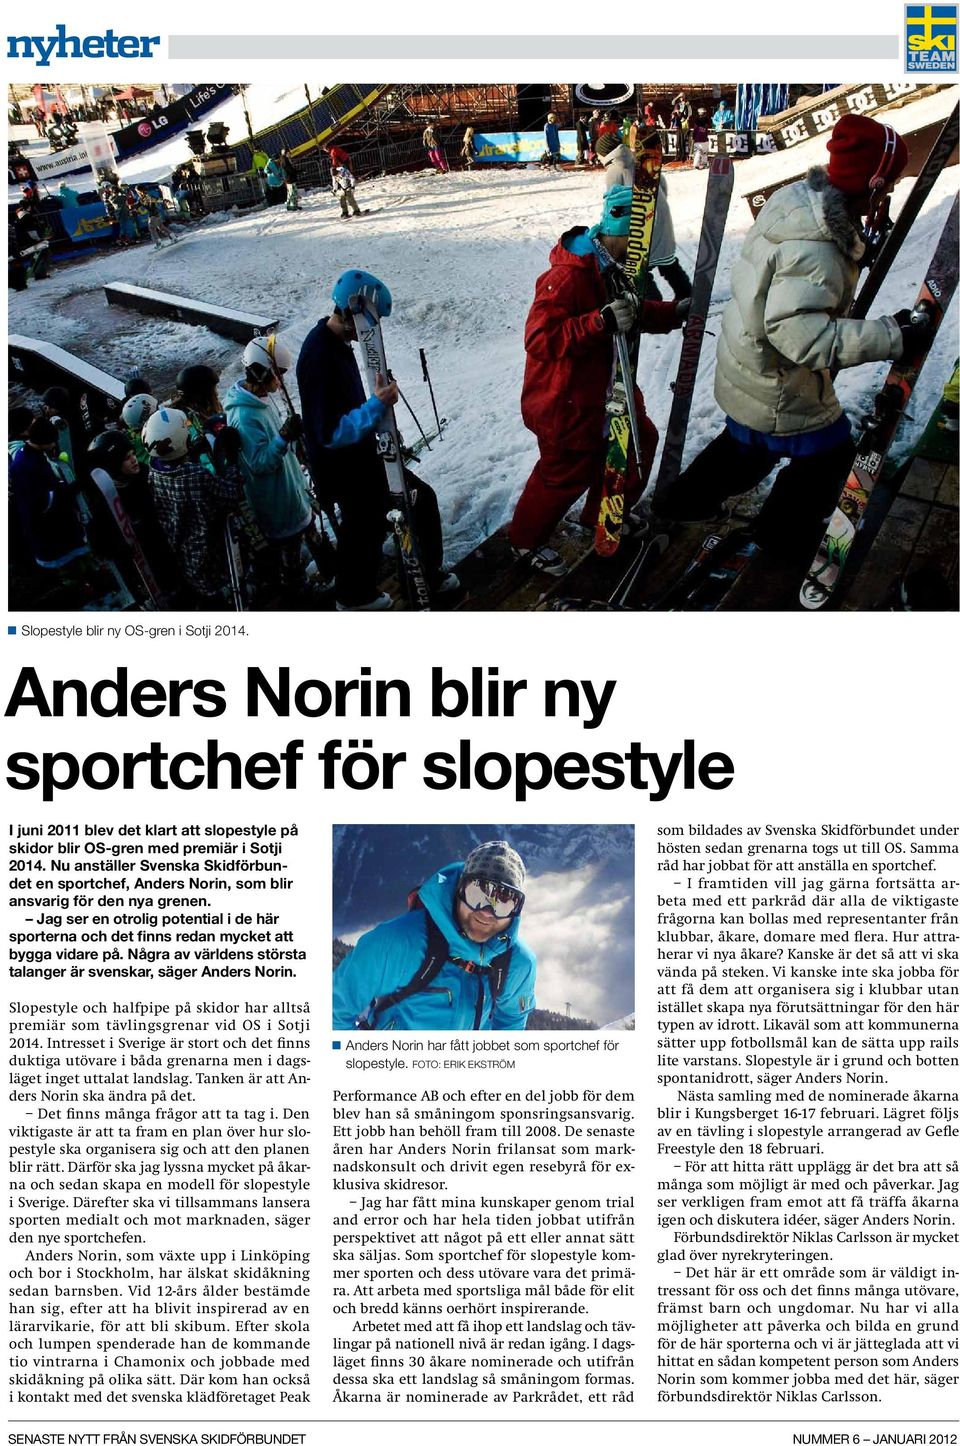 Några av världens största talanger är svenskar, säger Anders Norin. Slopestyle och halfpipe på skidor har alltså premiär som tävlingsgrenar vid OS i Sotji 2014.